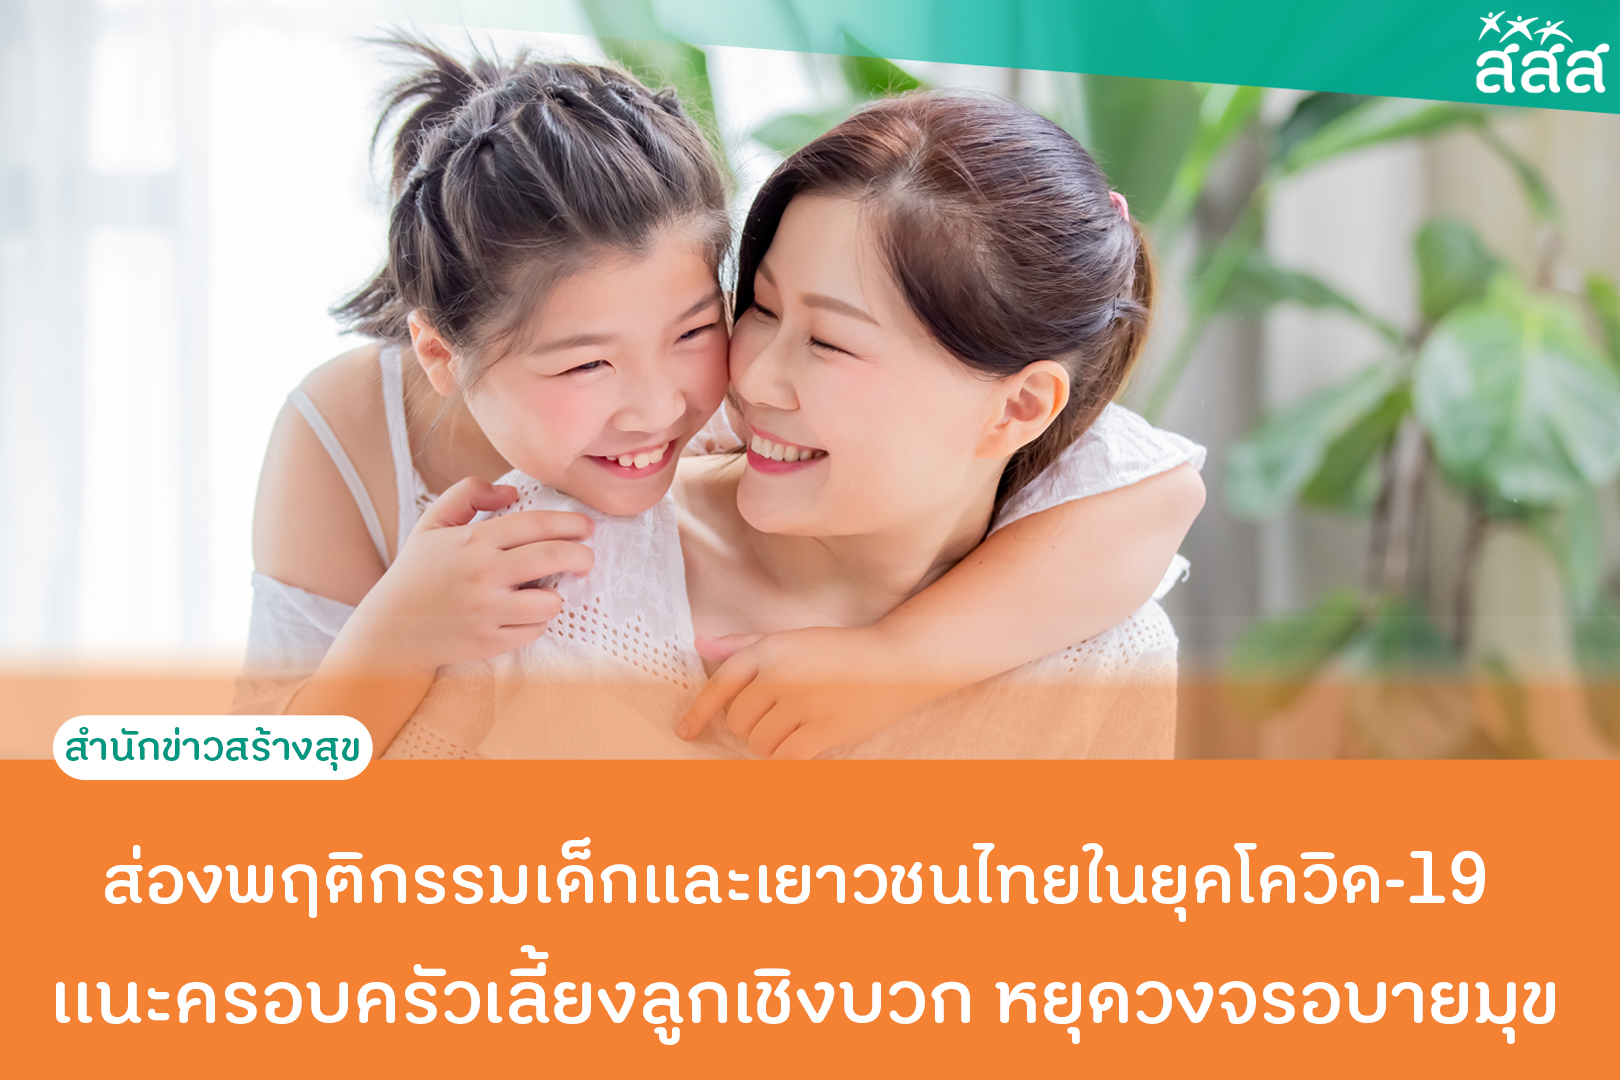 ส่องพฤติกรรมเด็กและเยาวชนไทยในยุคโควิด-19 เเนะครอบครัวเลี้ยงลูกเชิงบวก หยุดวงจรอบายมุข  thaihealth